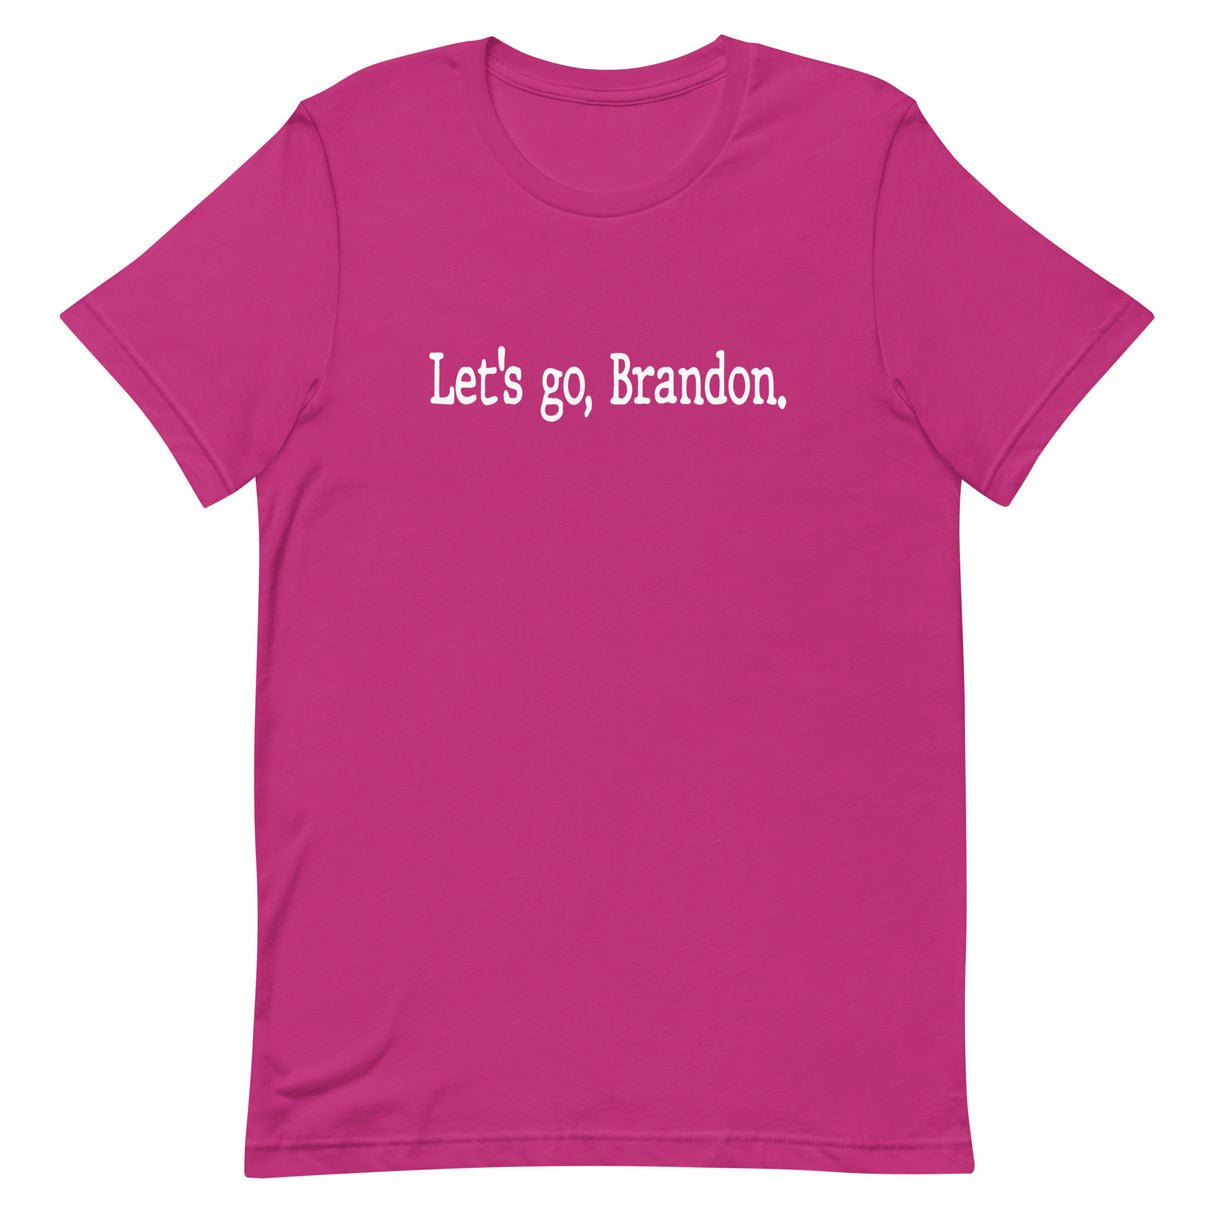 Let's Go Brandon Typewriter Shirt - Libertarian Country